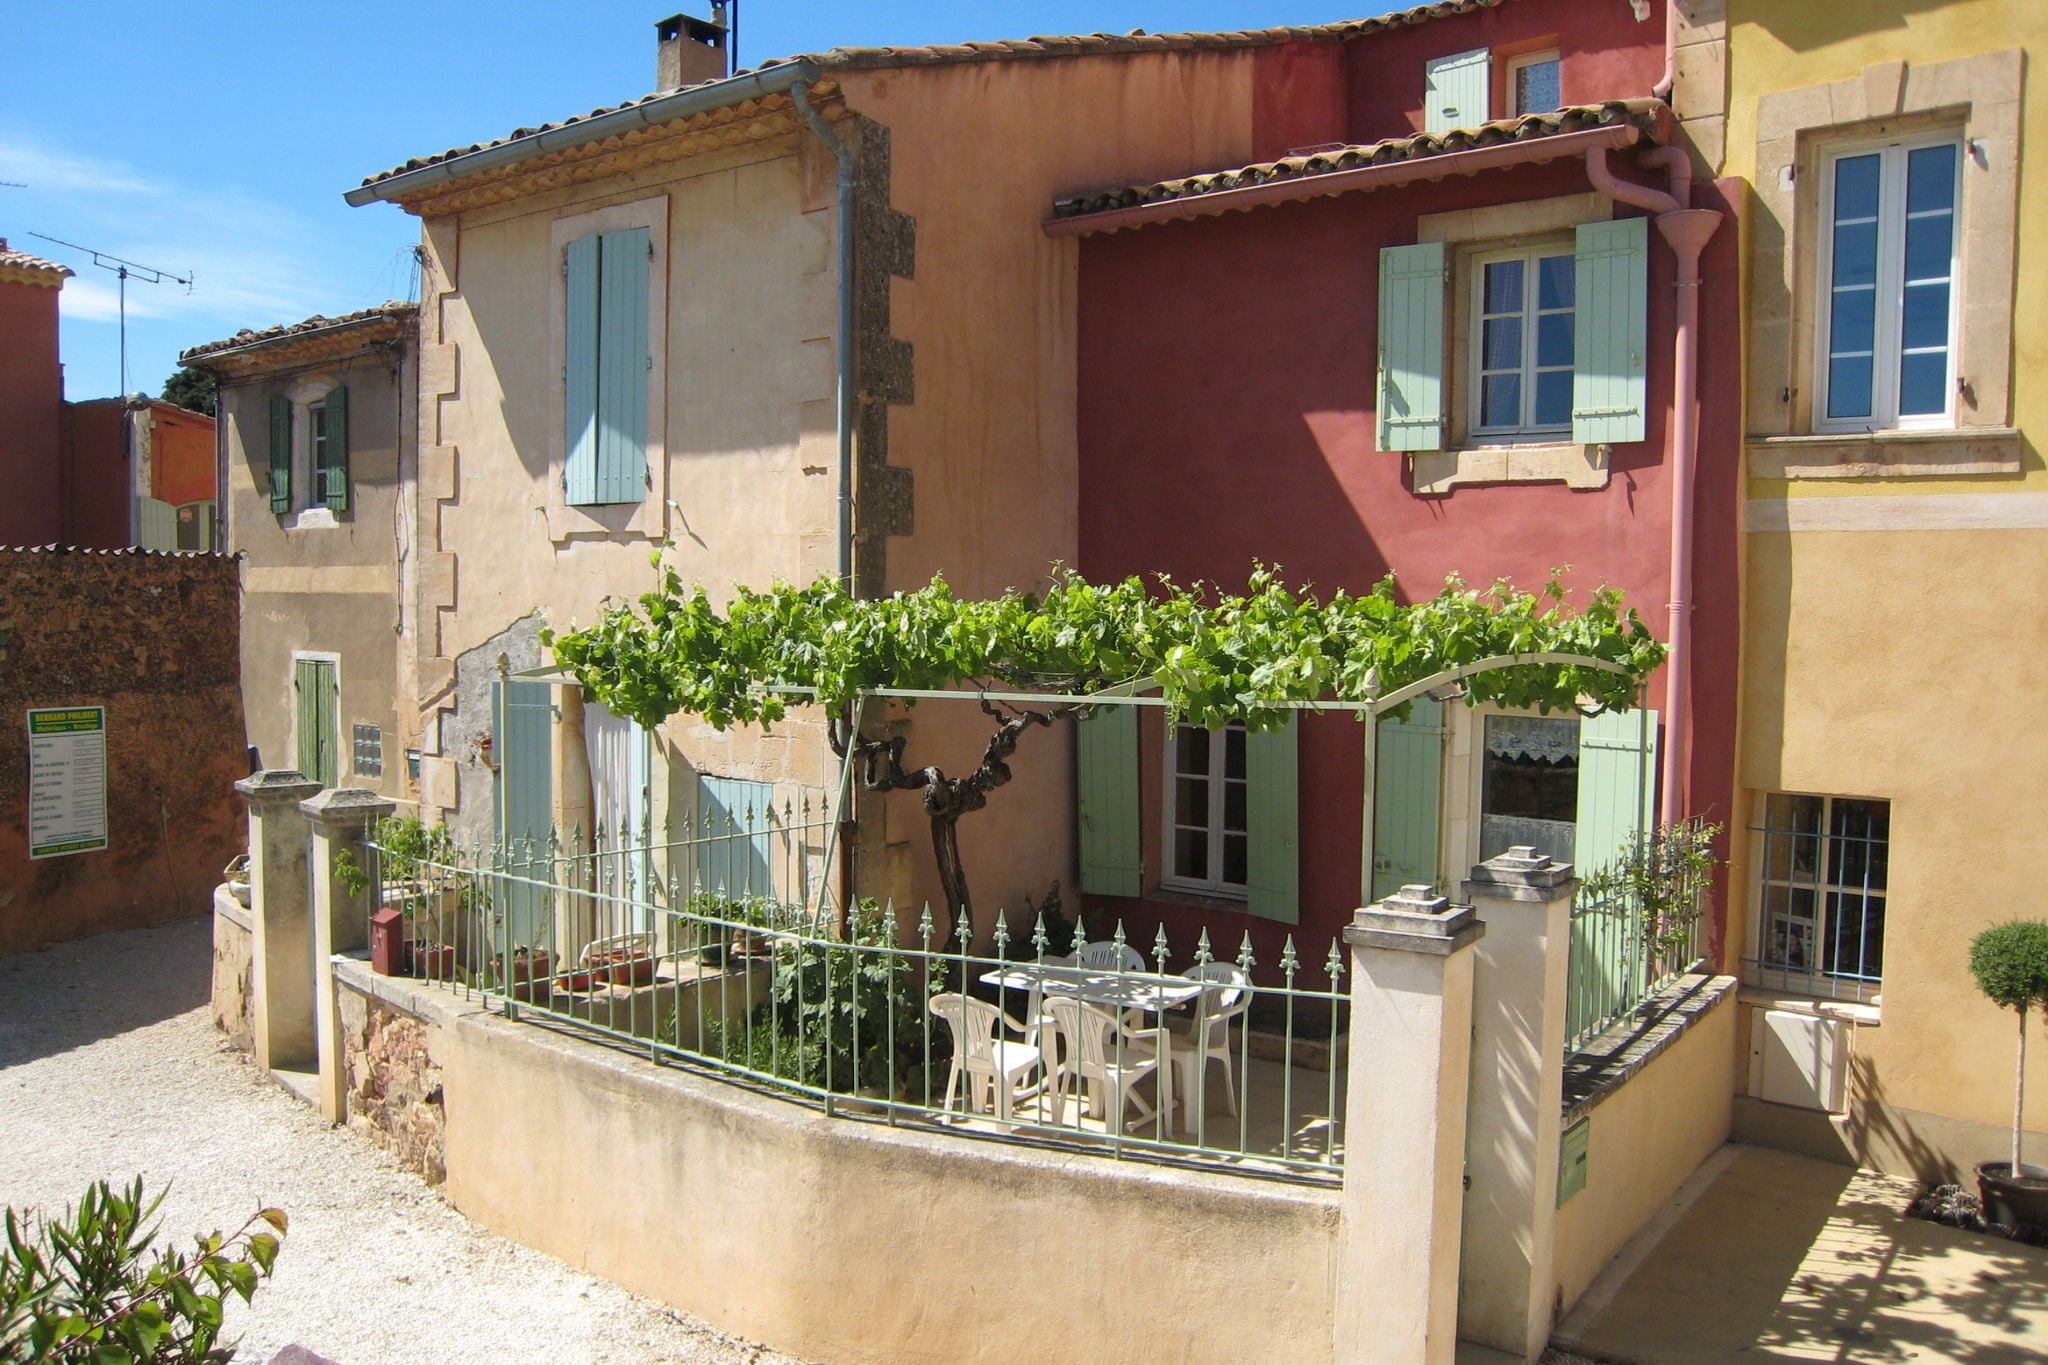 Authentiek dorpshuis uit de 18de eeuw in het hart van het bekende Roussillon